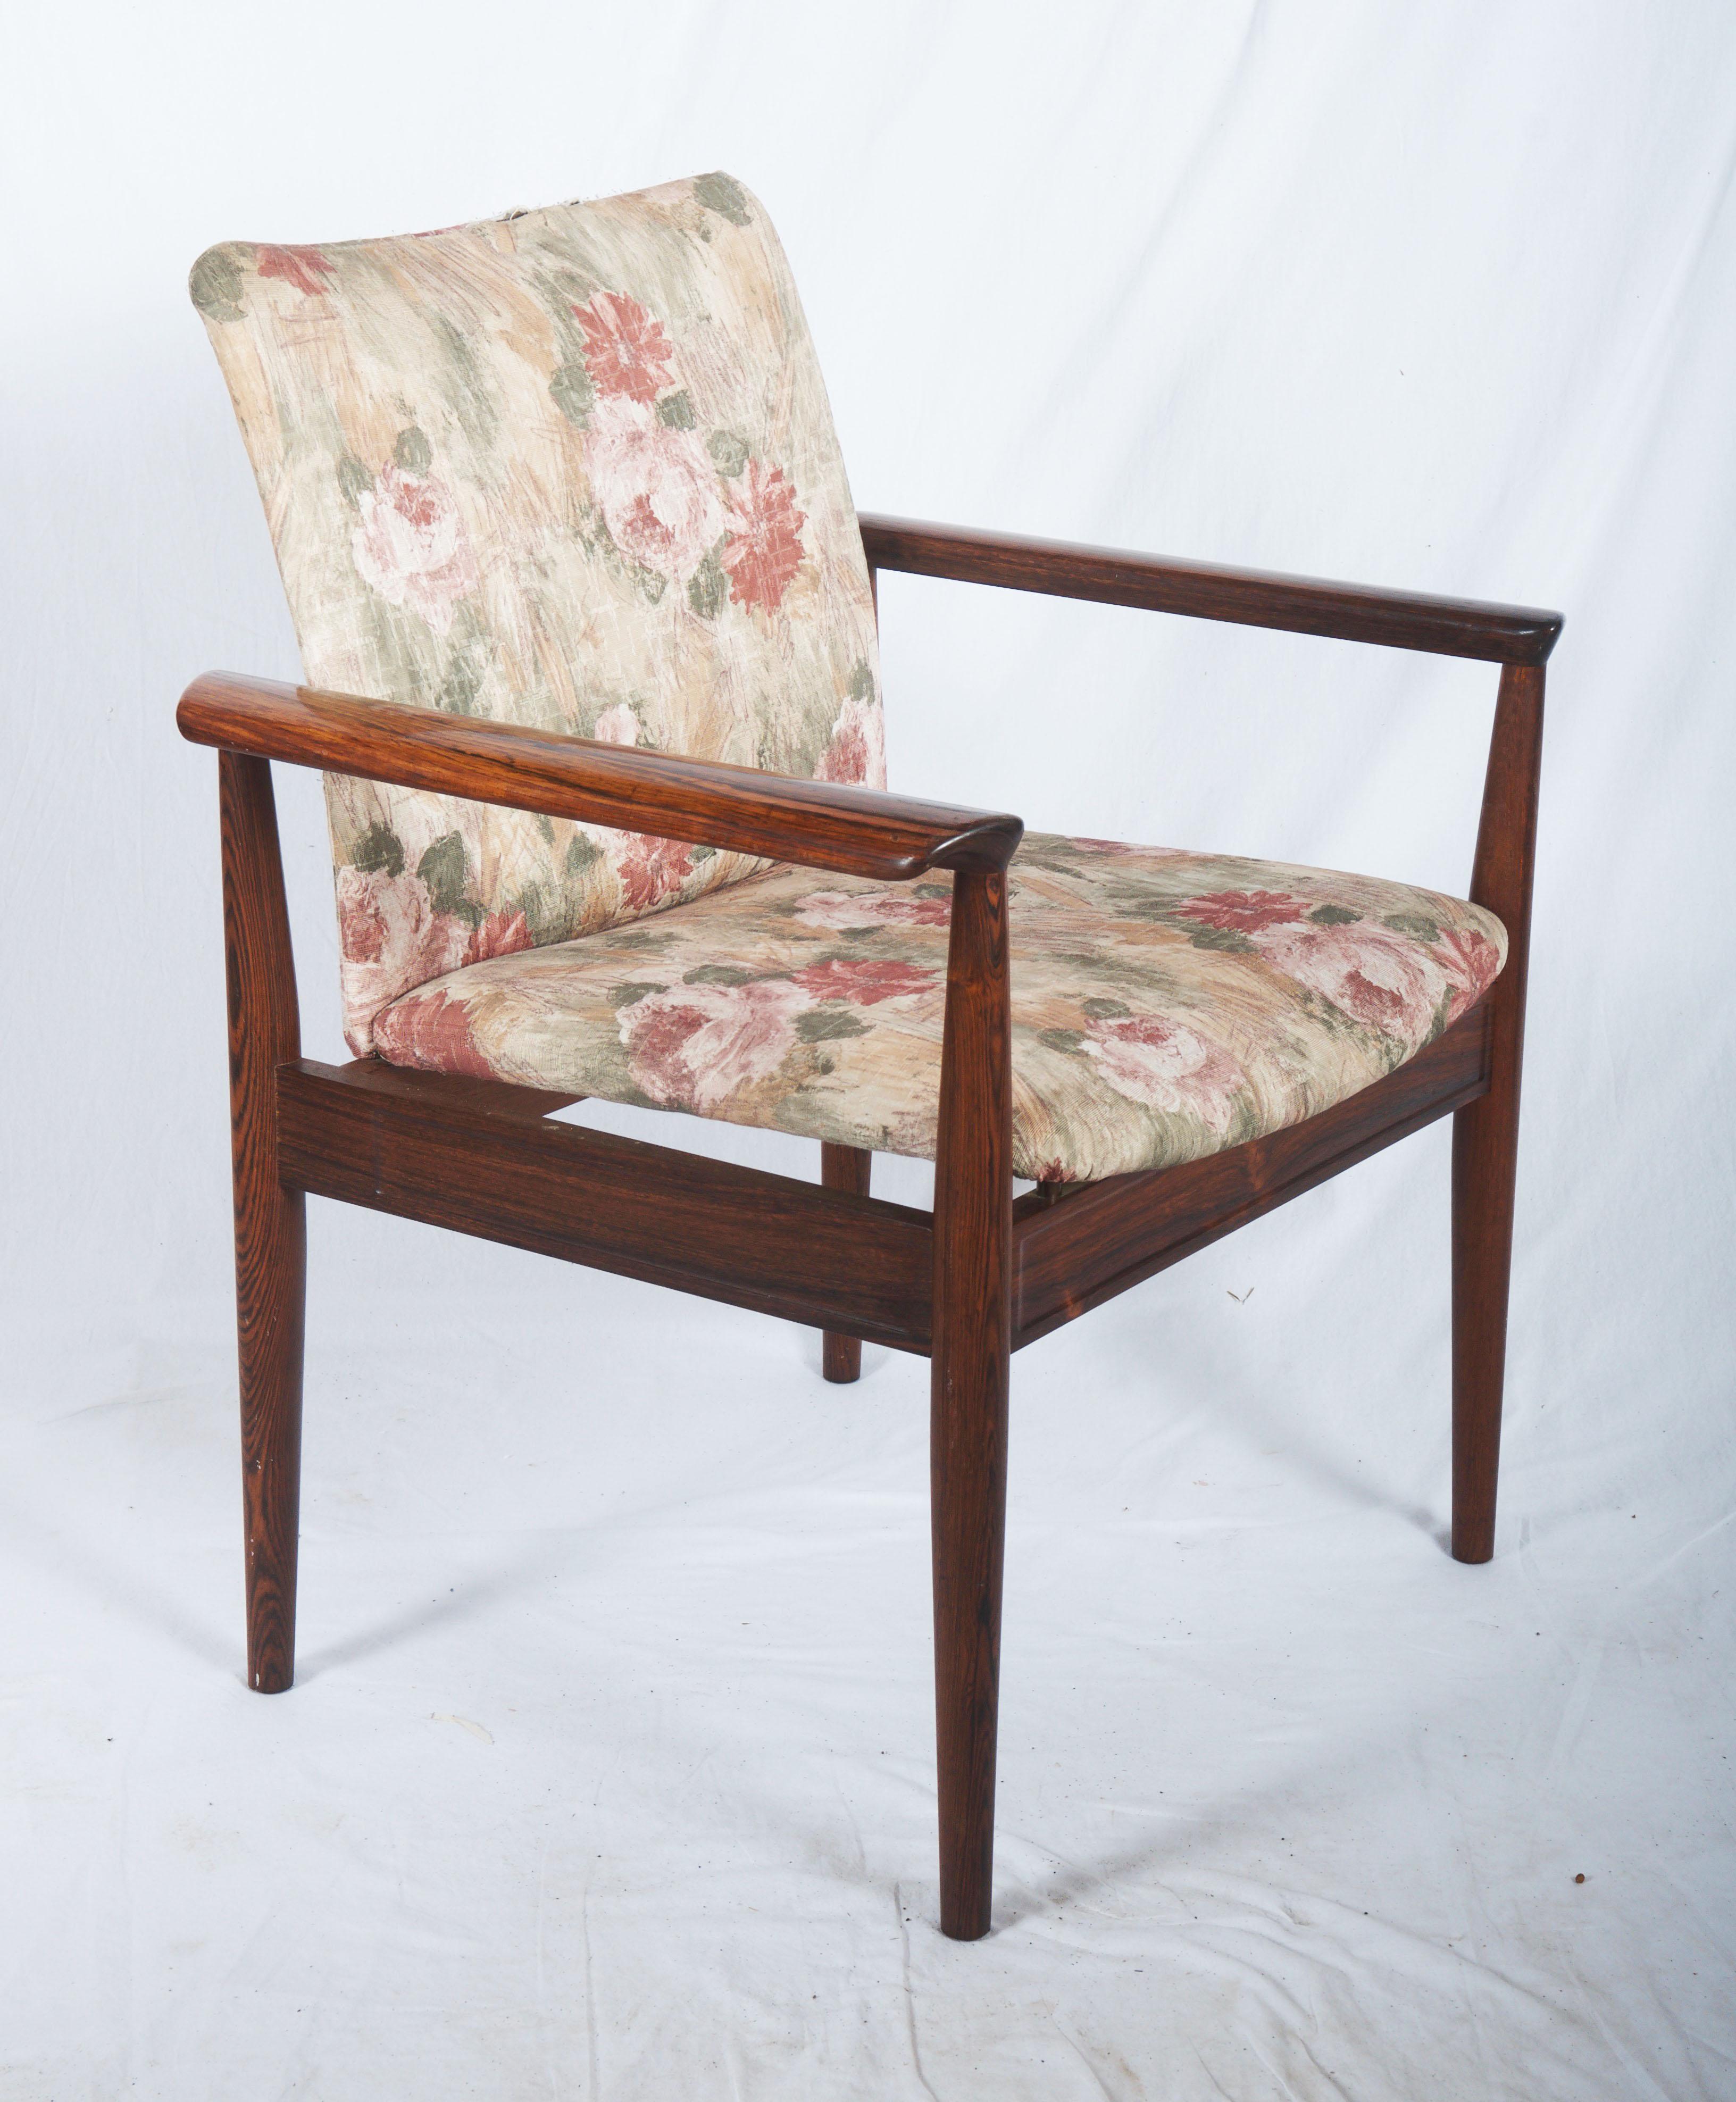 Finn Juhl, Diplomaten Schreibtischstuhl oder Sessel mit Gestell aus massivem Hartholz, Modell 209. Entworfen im Jahr 1963. Produziert von France & Son.
Maße: H. 82 cm, SH. 44 cm, B. 69 cm.
Gebraucht, aber noch in sehr gutem Zustand, neue